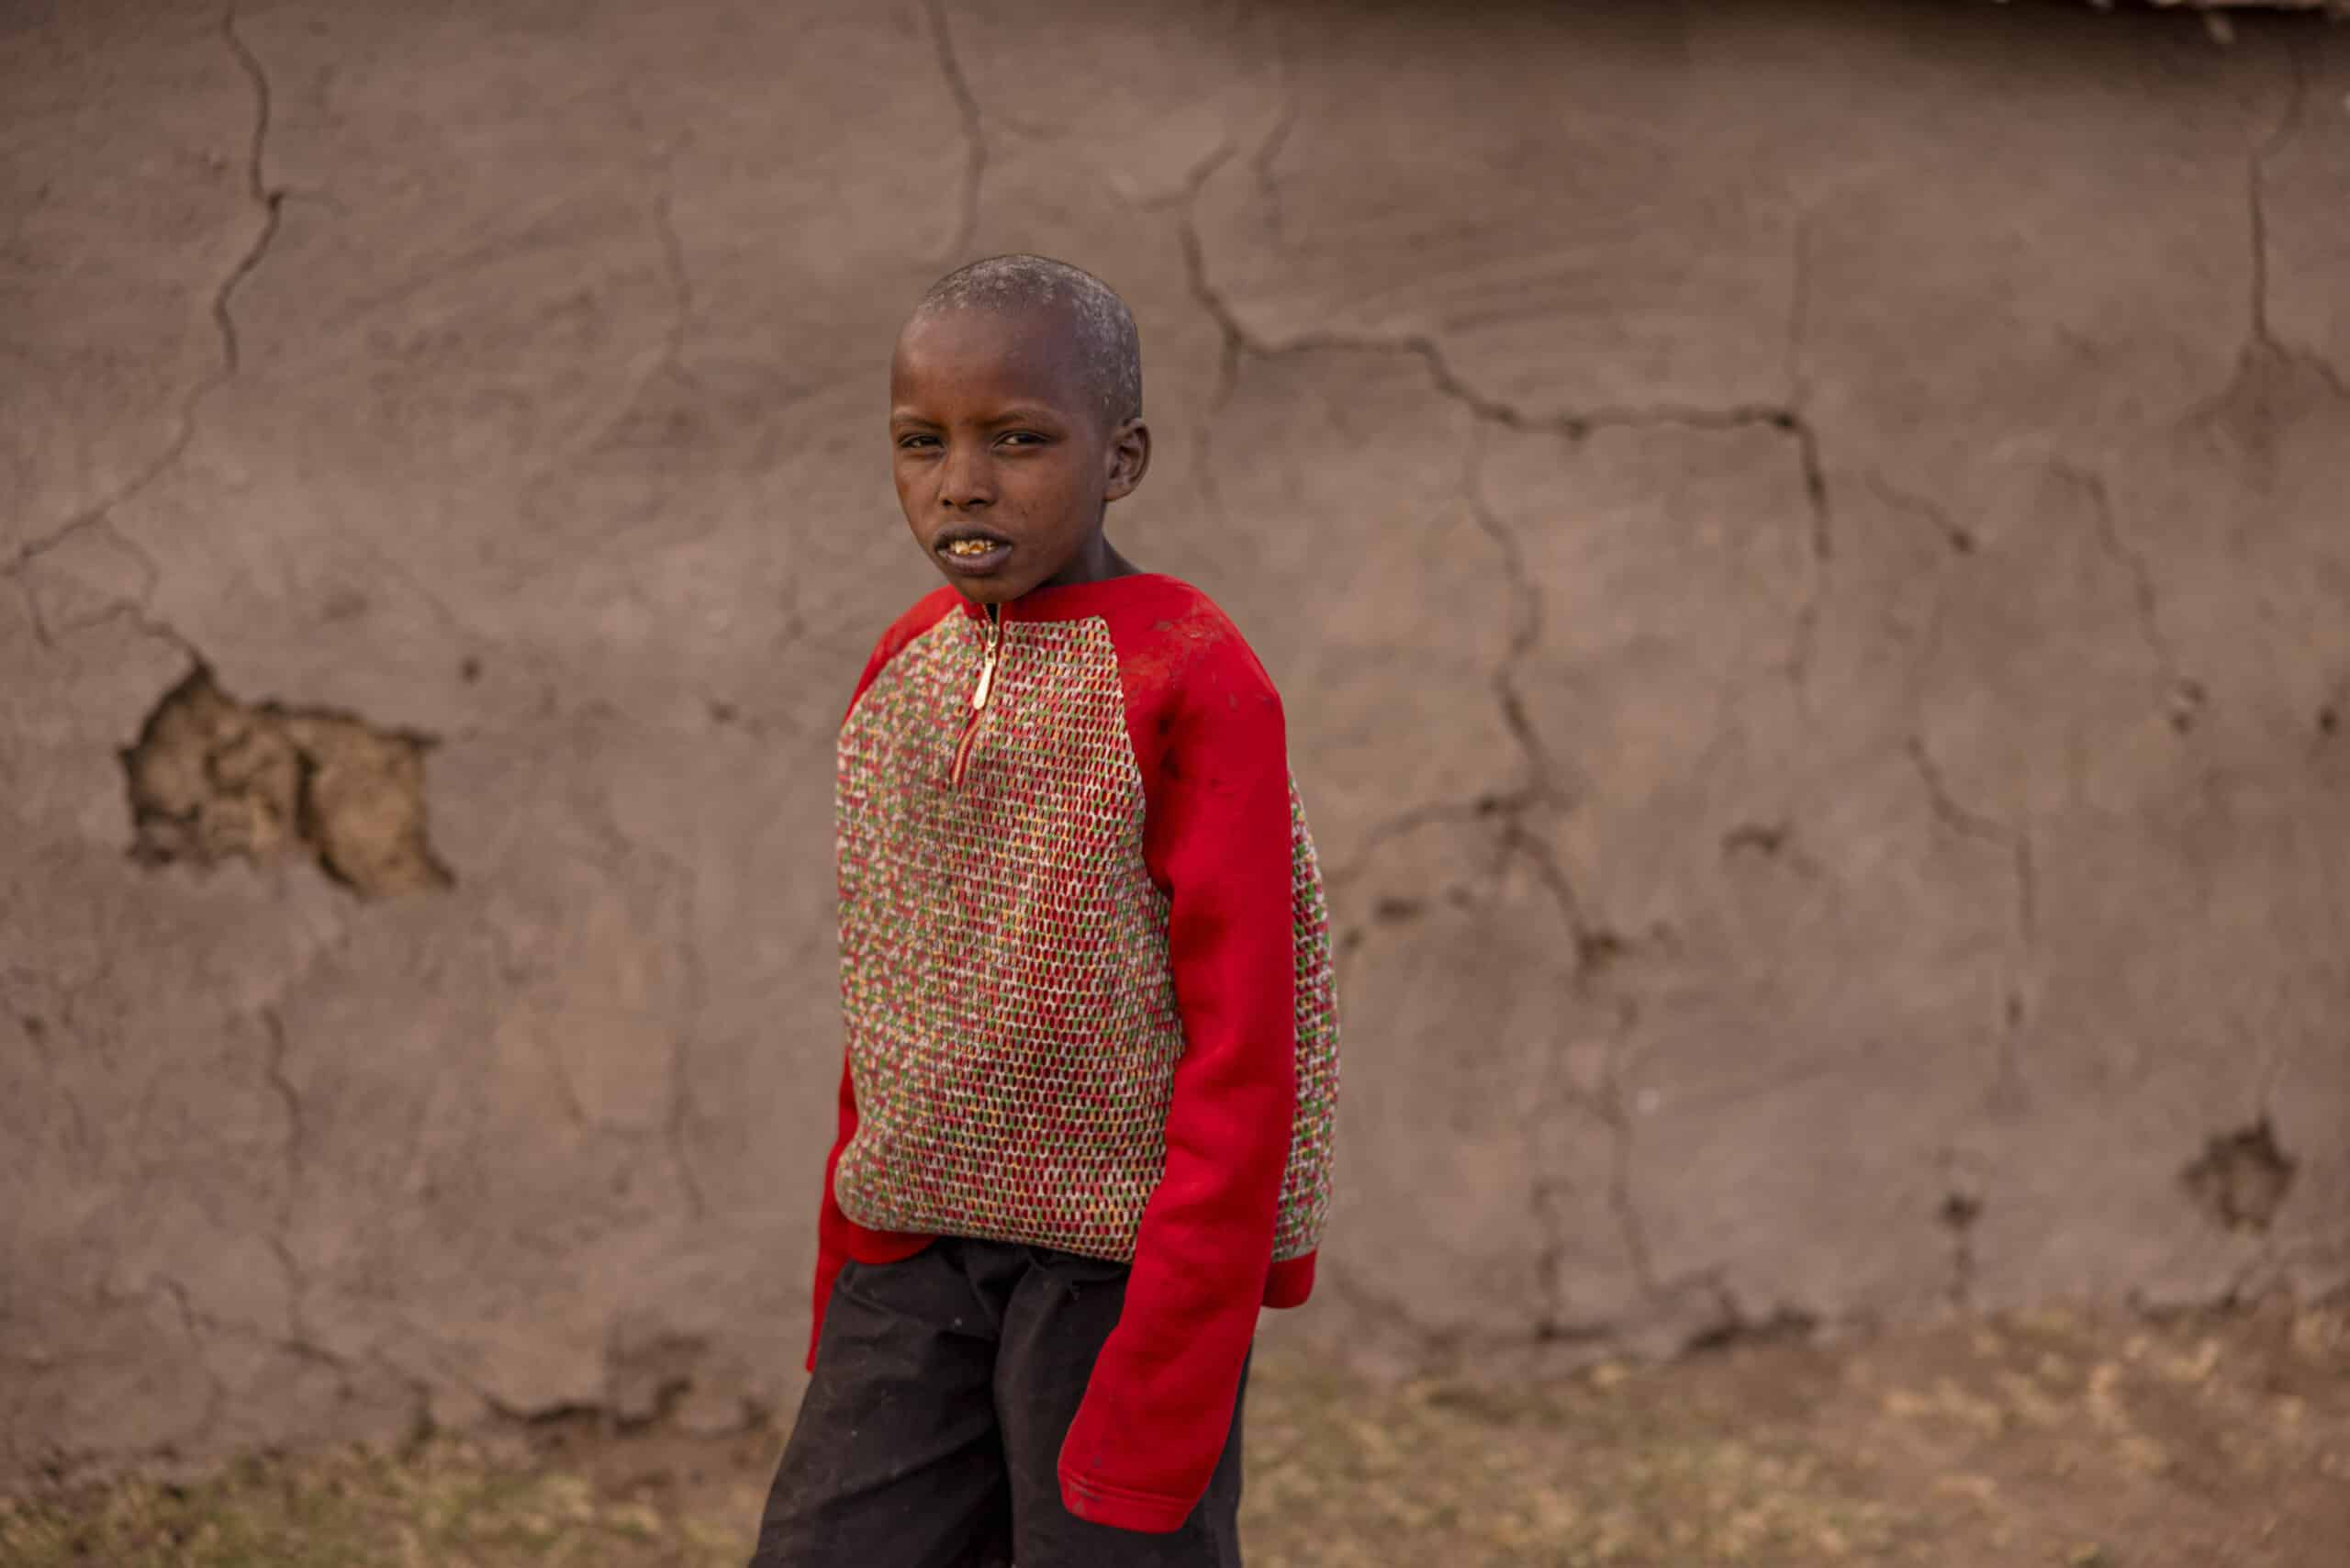 Ein kleiner Junge steht vor einer Wand mit großen Rissen. Er trägt einen roten Pullover und eine bunte Weste. Der Hintergrund ist unscharf, sodass die Aufmerksamkeit auf seinen nachdenklichen Gesichtsausdruck fällt. © Fotografie Tomas Rodriguez